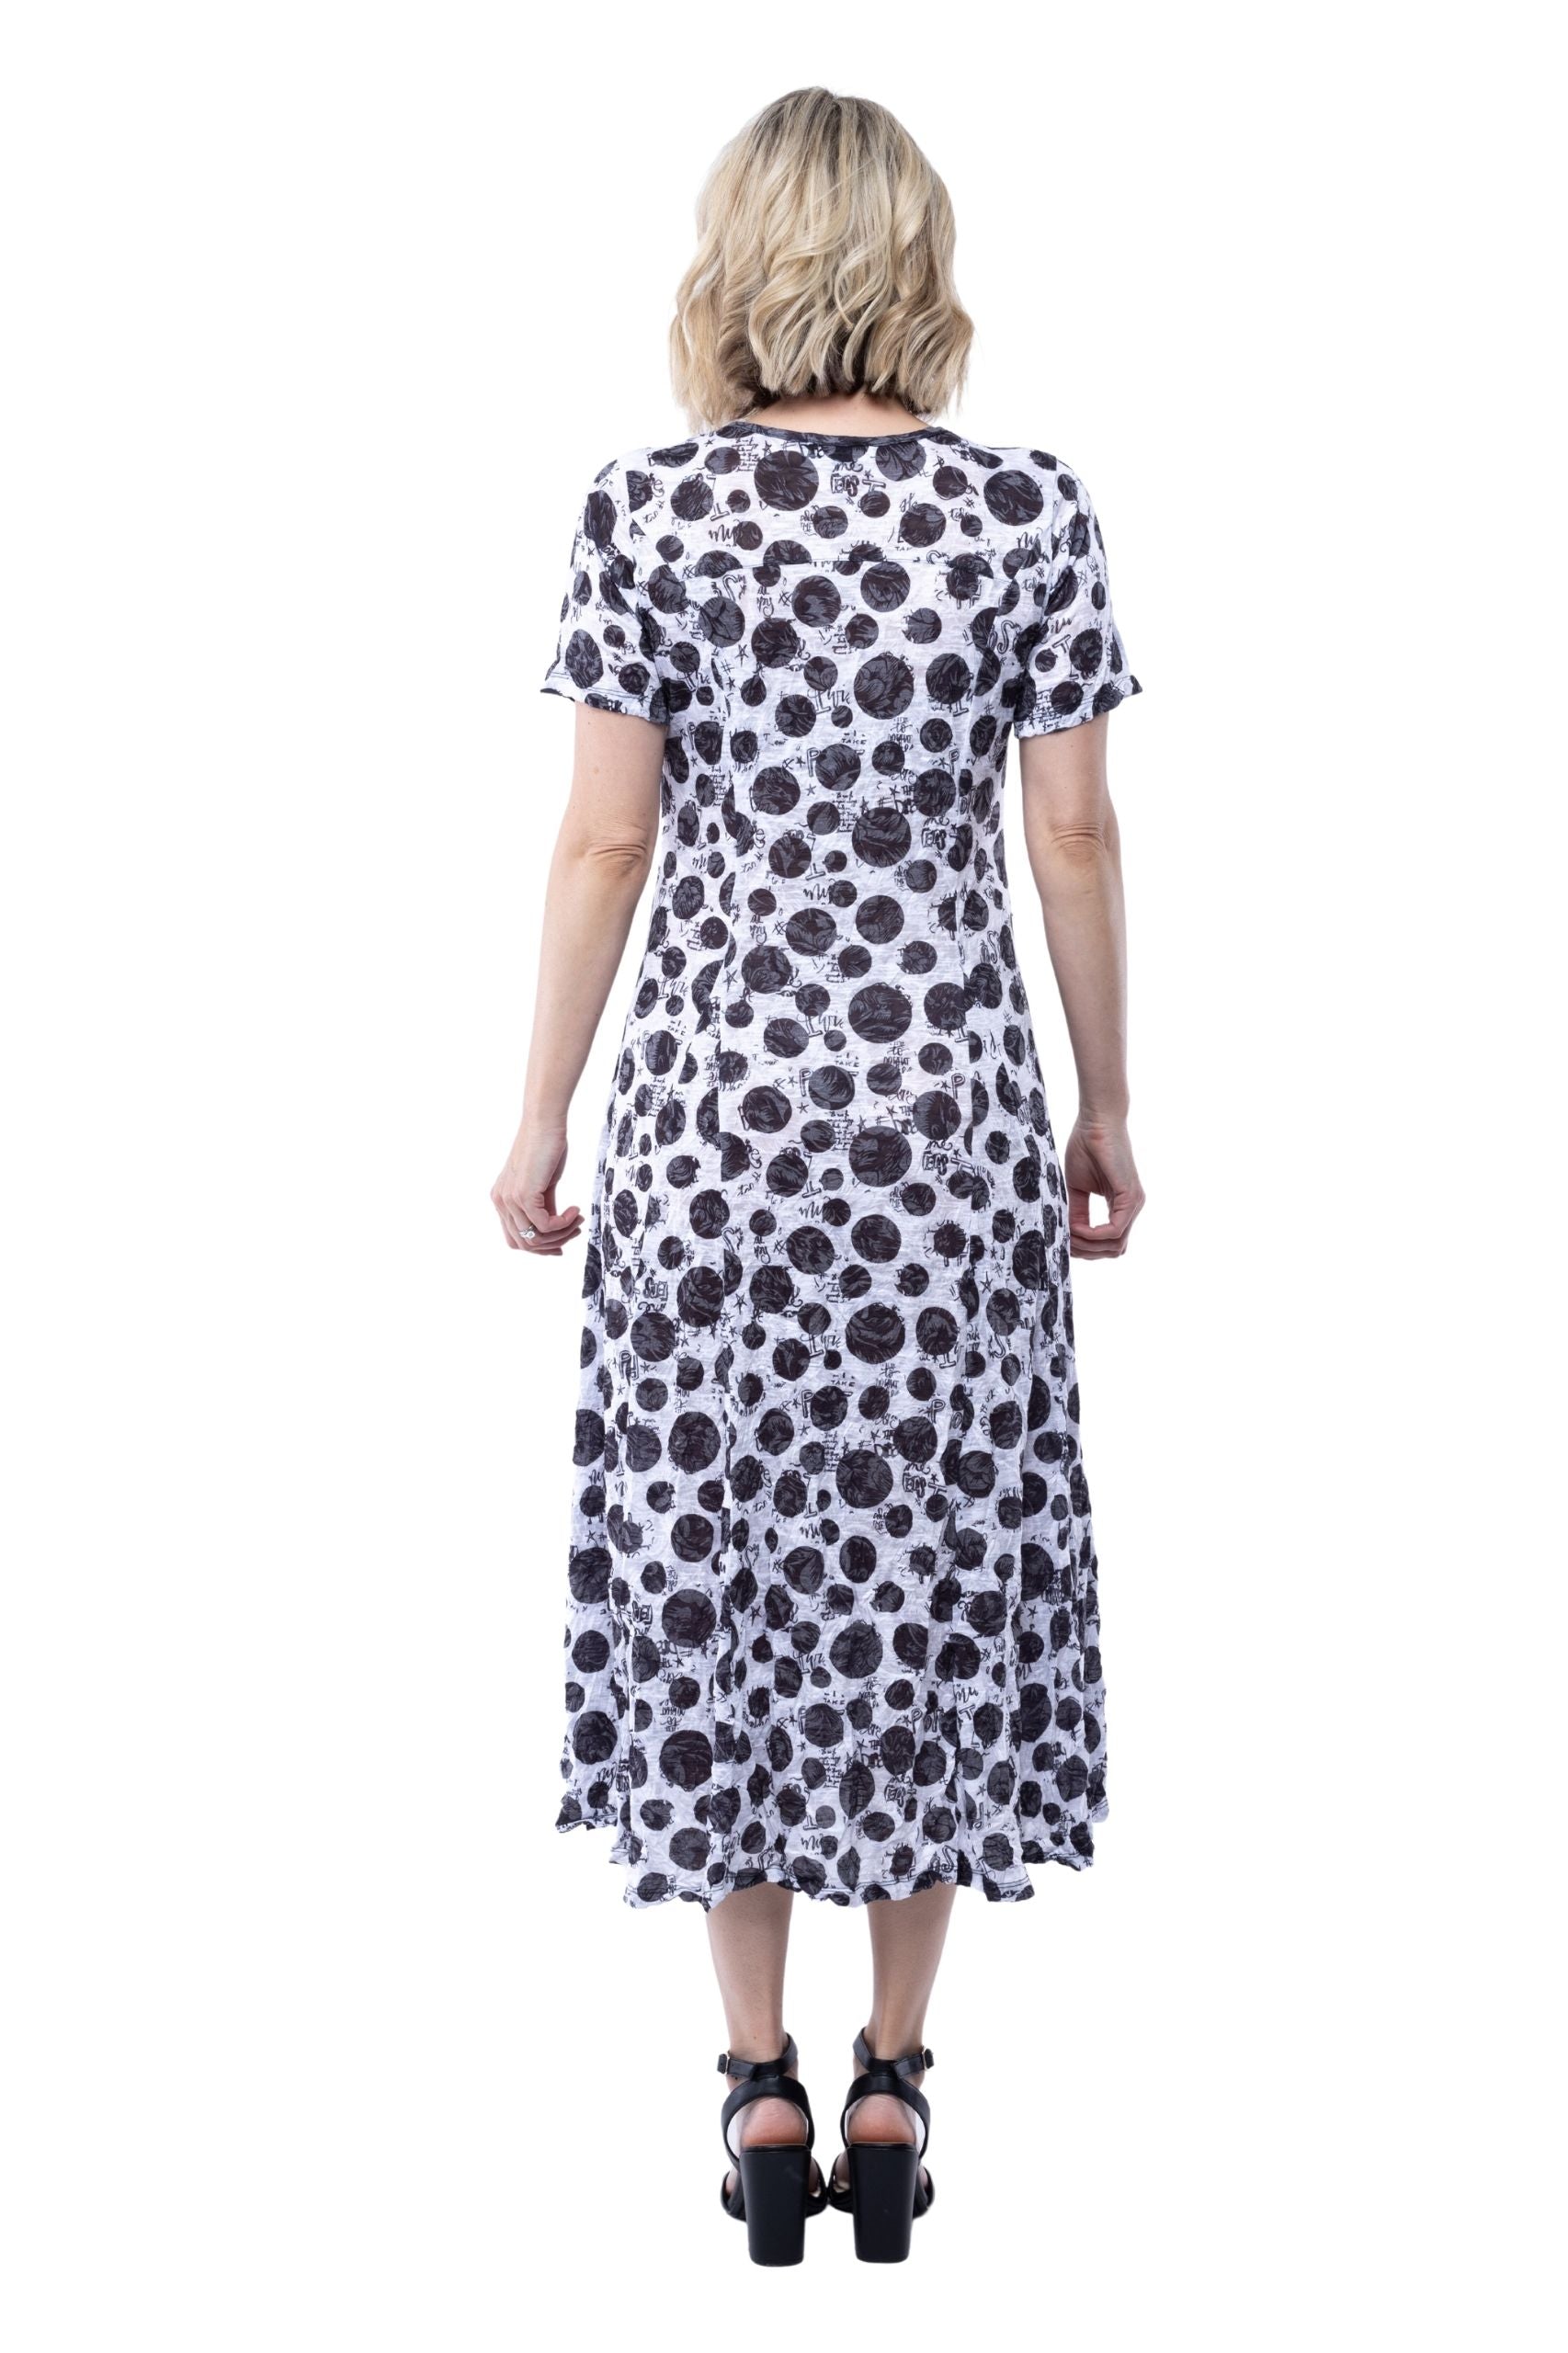 Tiffany Dress - Black Spots - CARINE